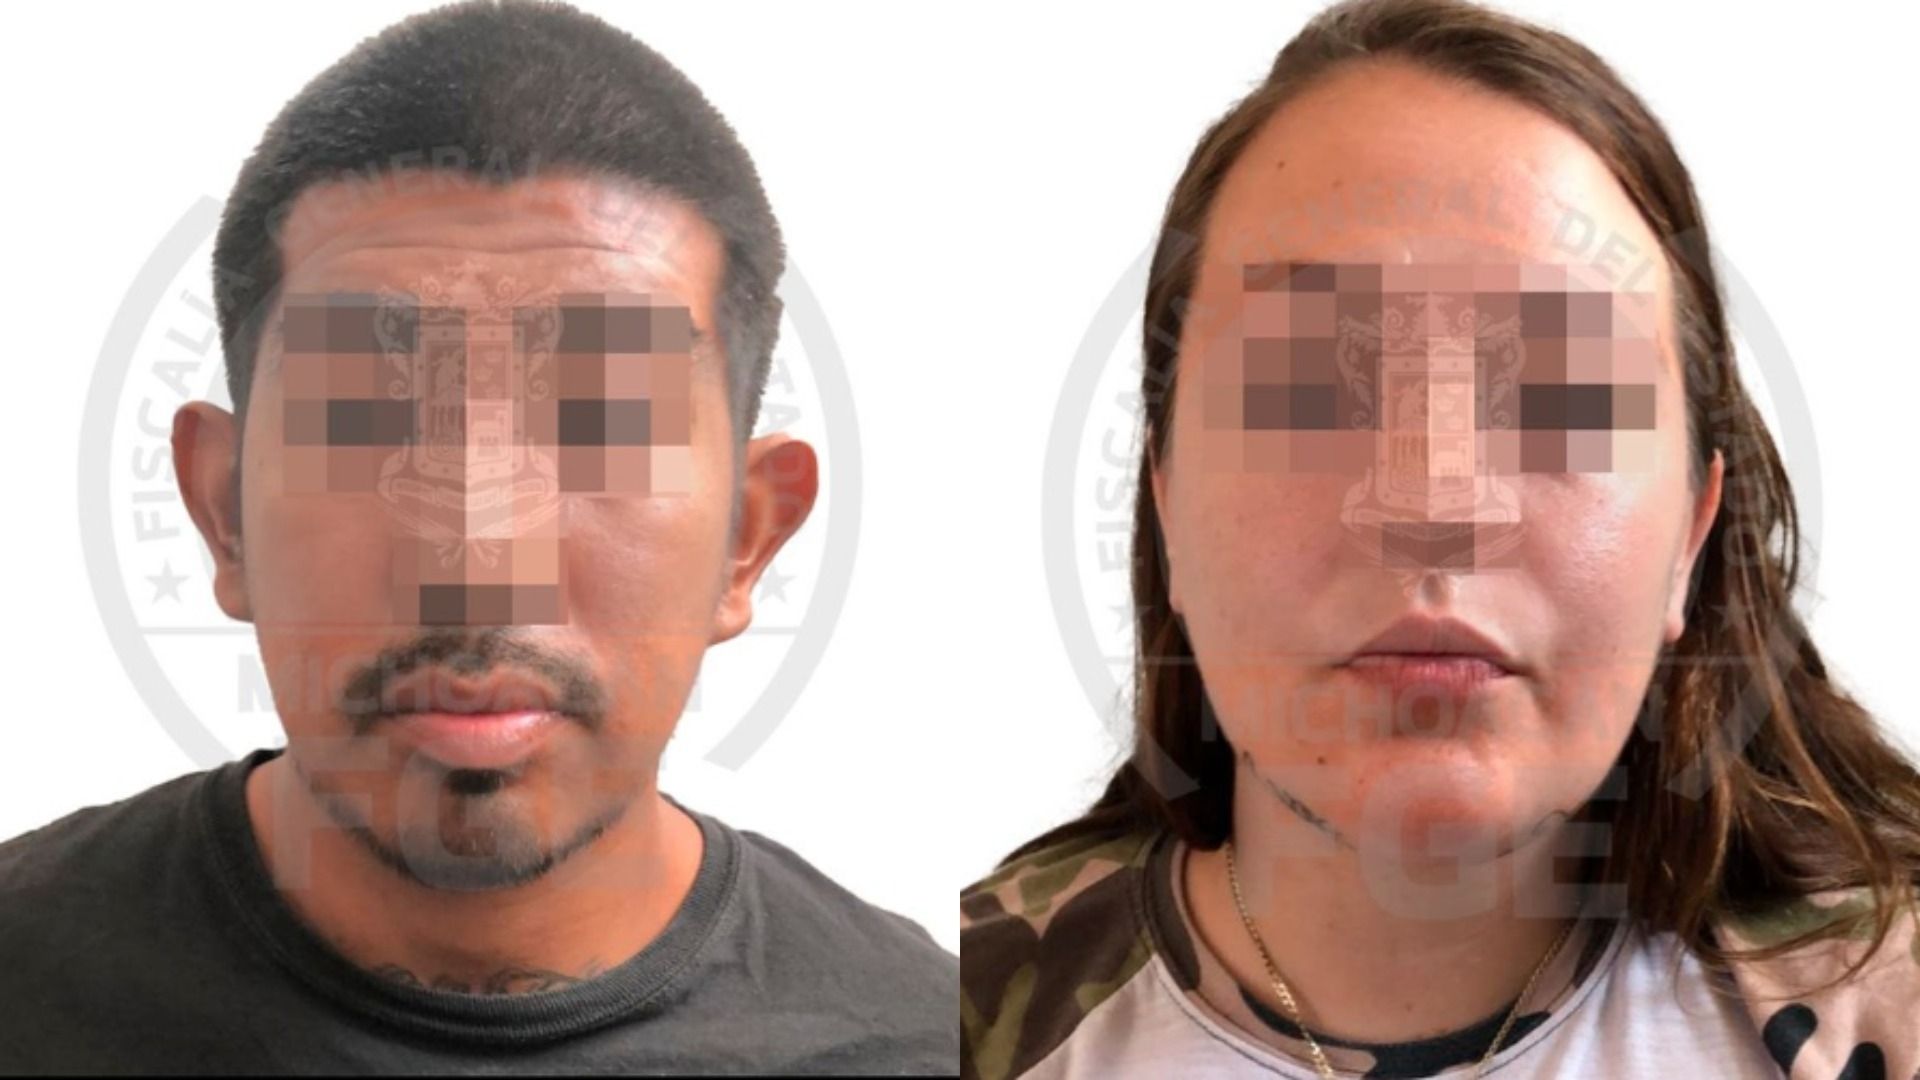 Santiago Hernández, de 26 años, y Lorie Lin Flowers, de 25 años, eran buscados por el FBI por secuestrar migrantes ilegales en EUA